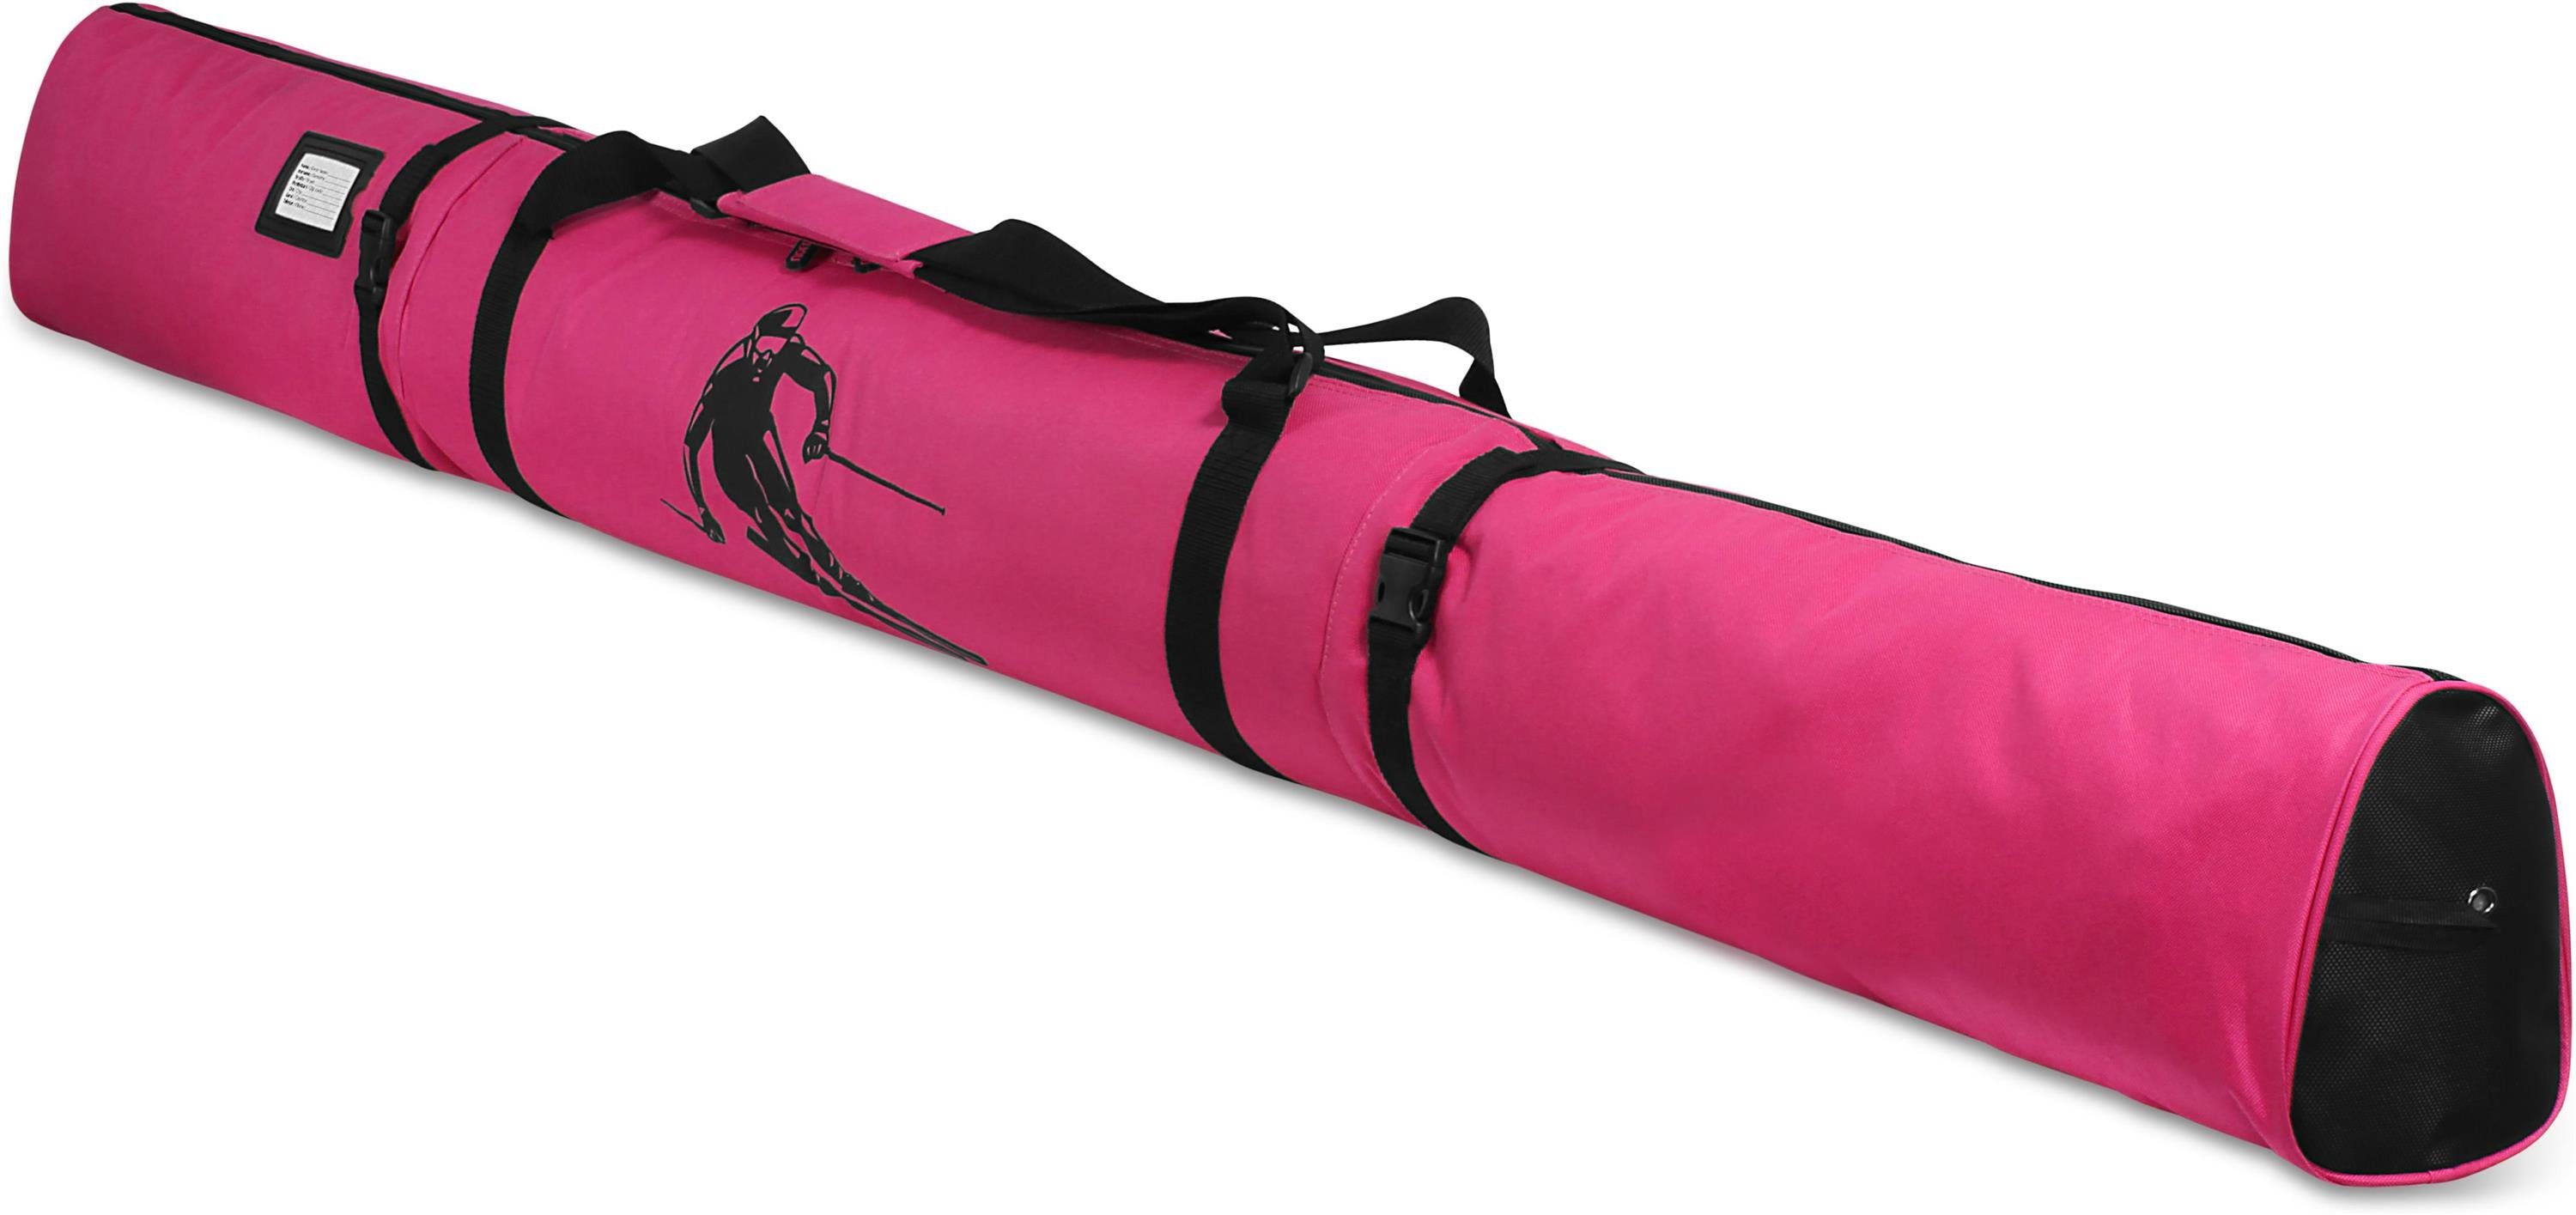 normani Sporttasche Skitasche Alpine Run 200, Skisack - Skitasche für Skier und Skistöcke Transporttasche Aufbewahrungstasche Pink